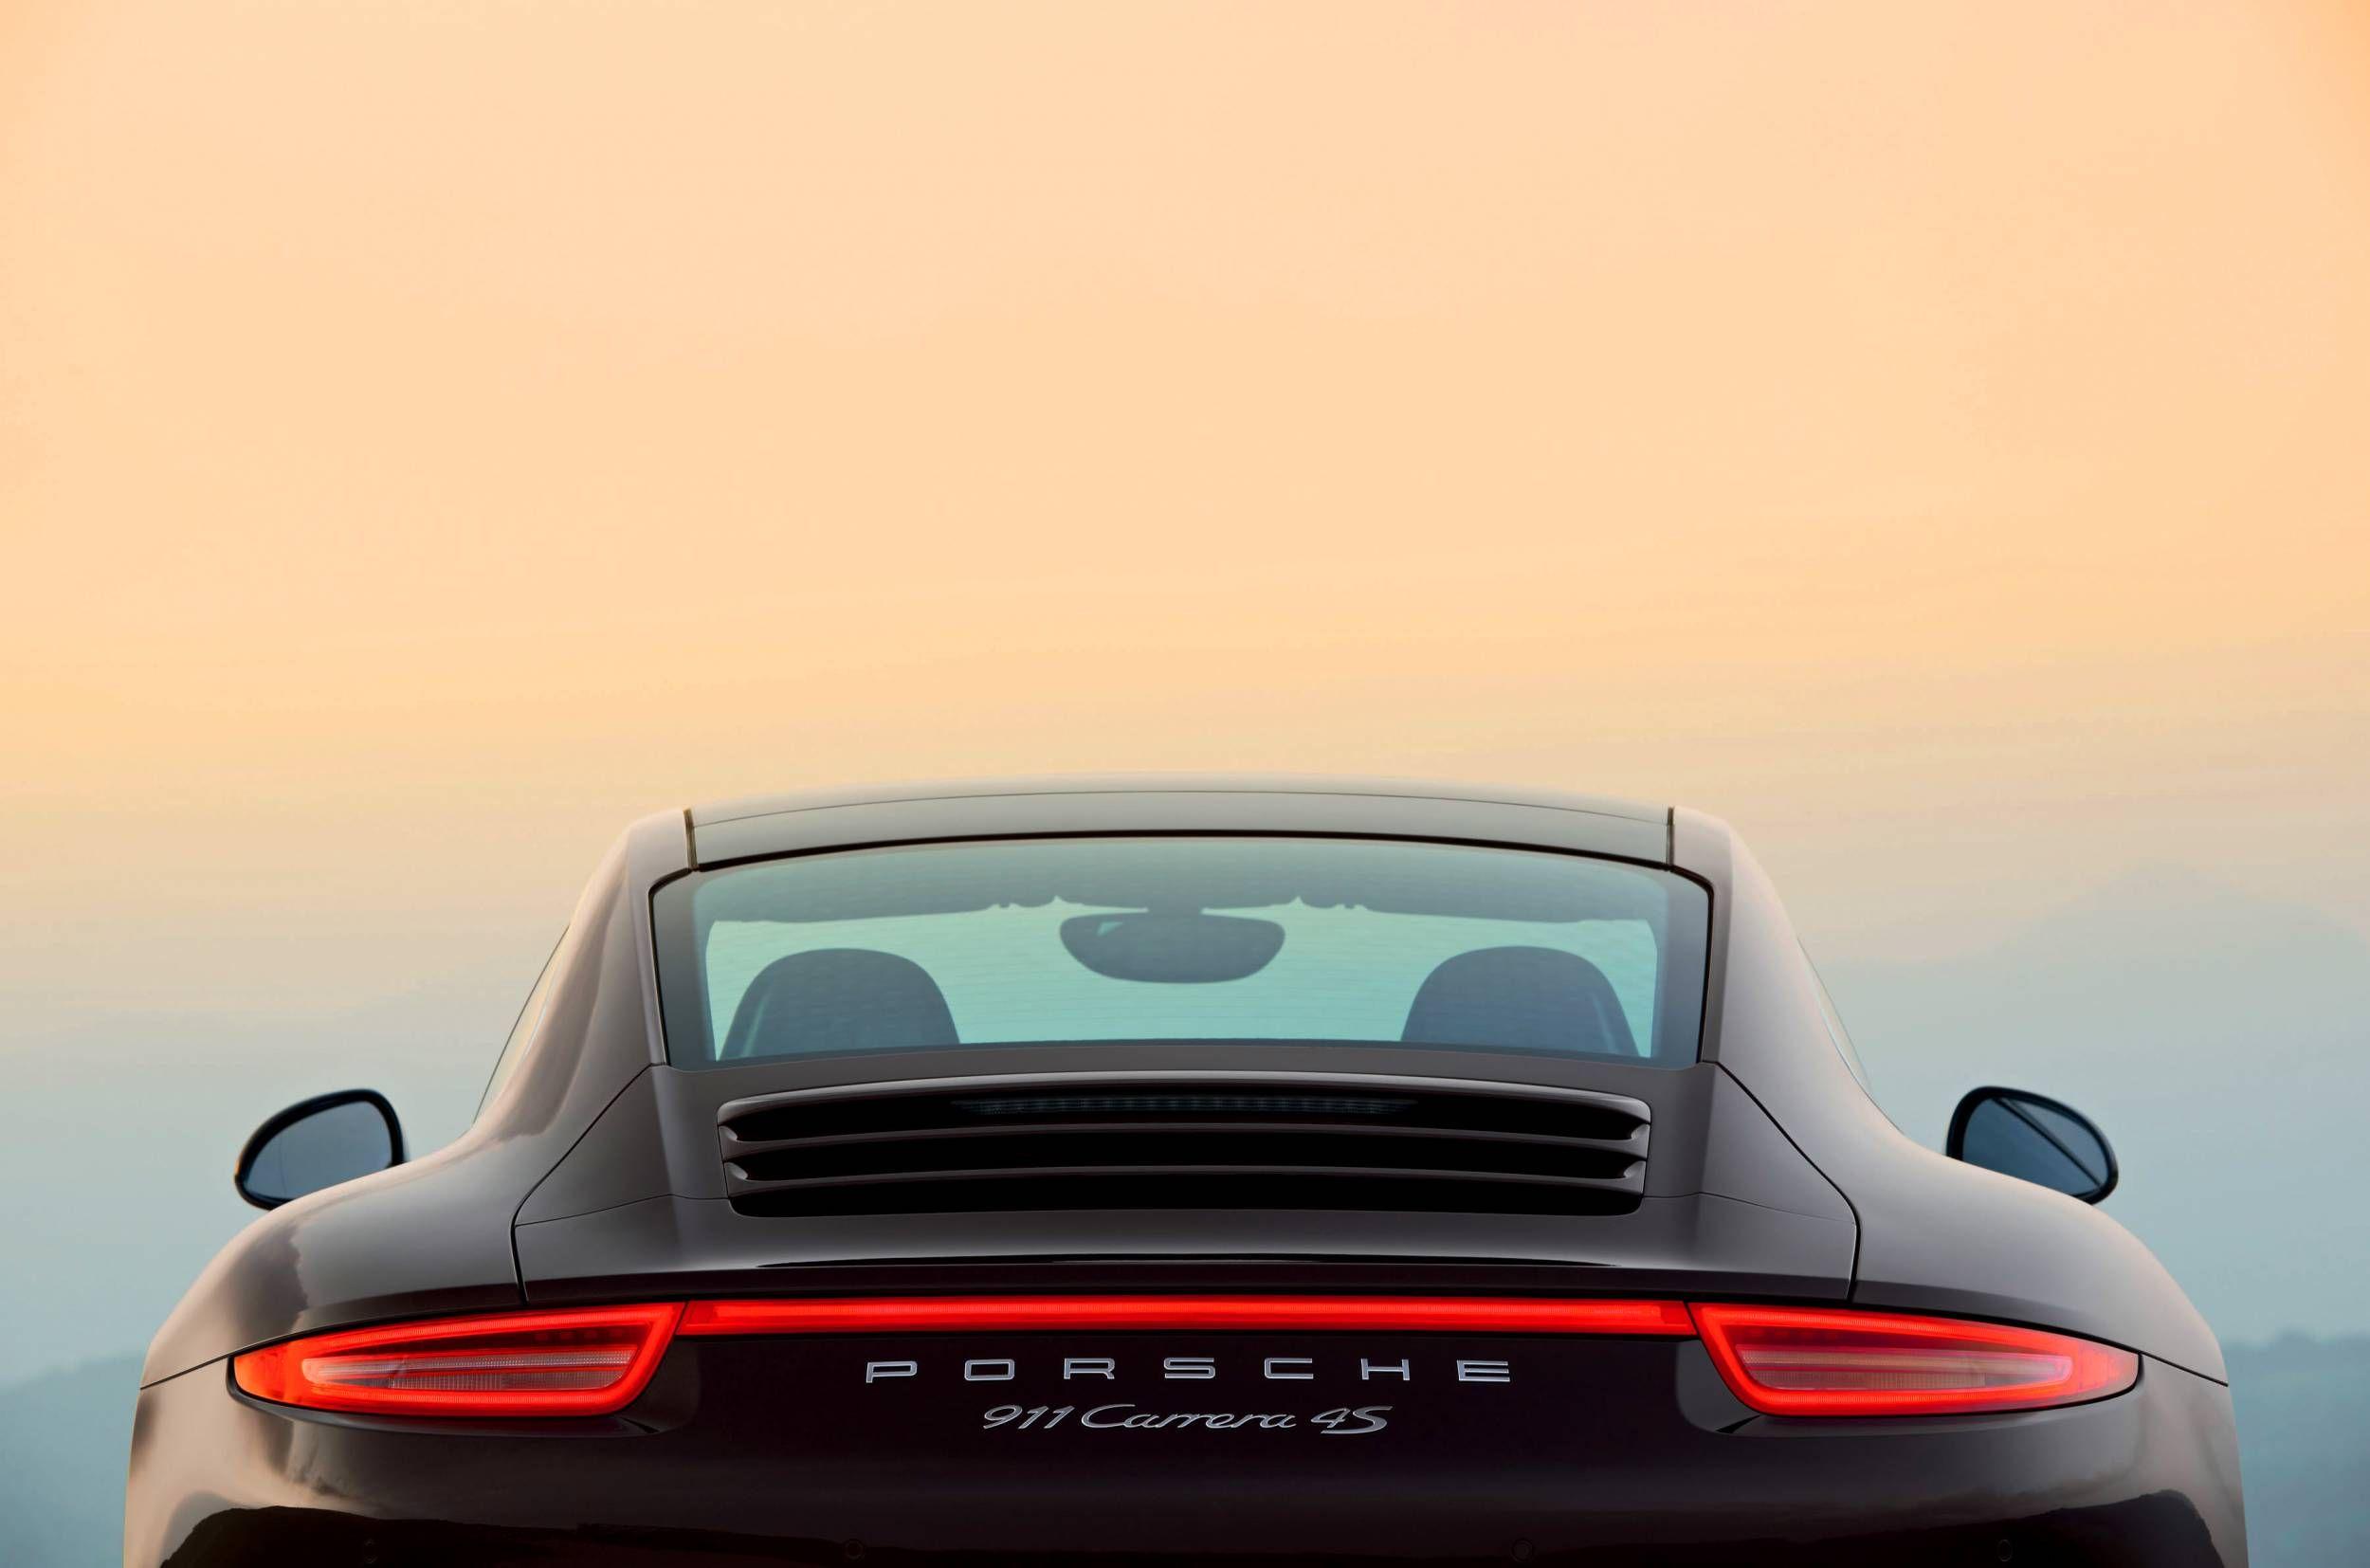 Hình nền xe Porsche làm nổi bật màn hình của bạn với kiểu dáng thể thao, sang trọng và đẳng cấp. Đặc biệt, hình ảnh xe Porsche sẽ mang đến cho bạn cảm giác mạnh mẽ, tinh tế và sự nổi bật trong chủ đề ô tô.